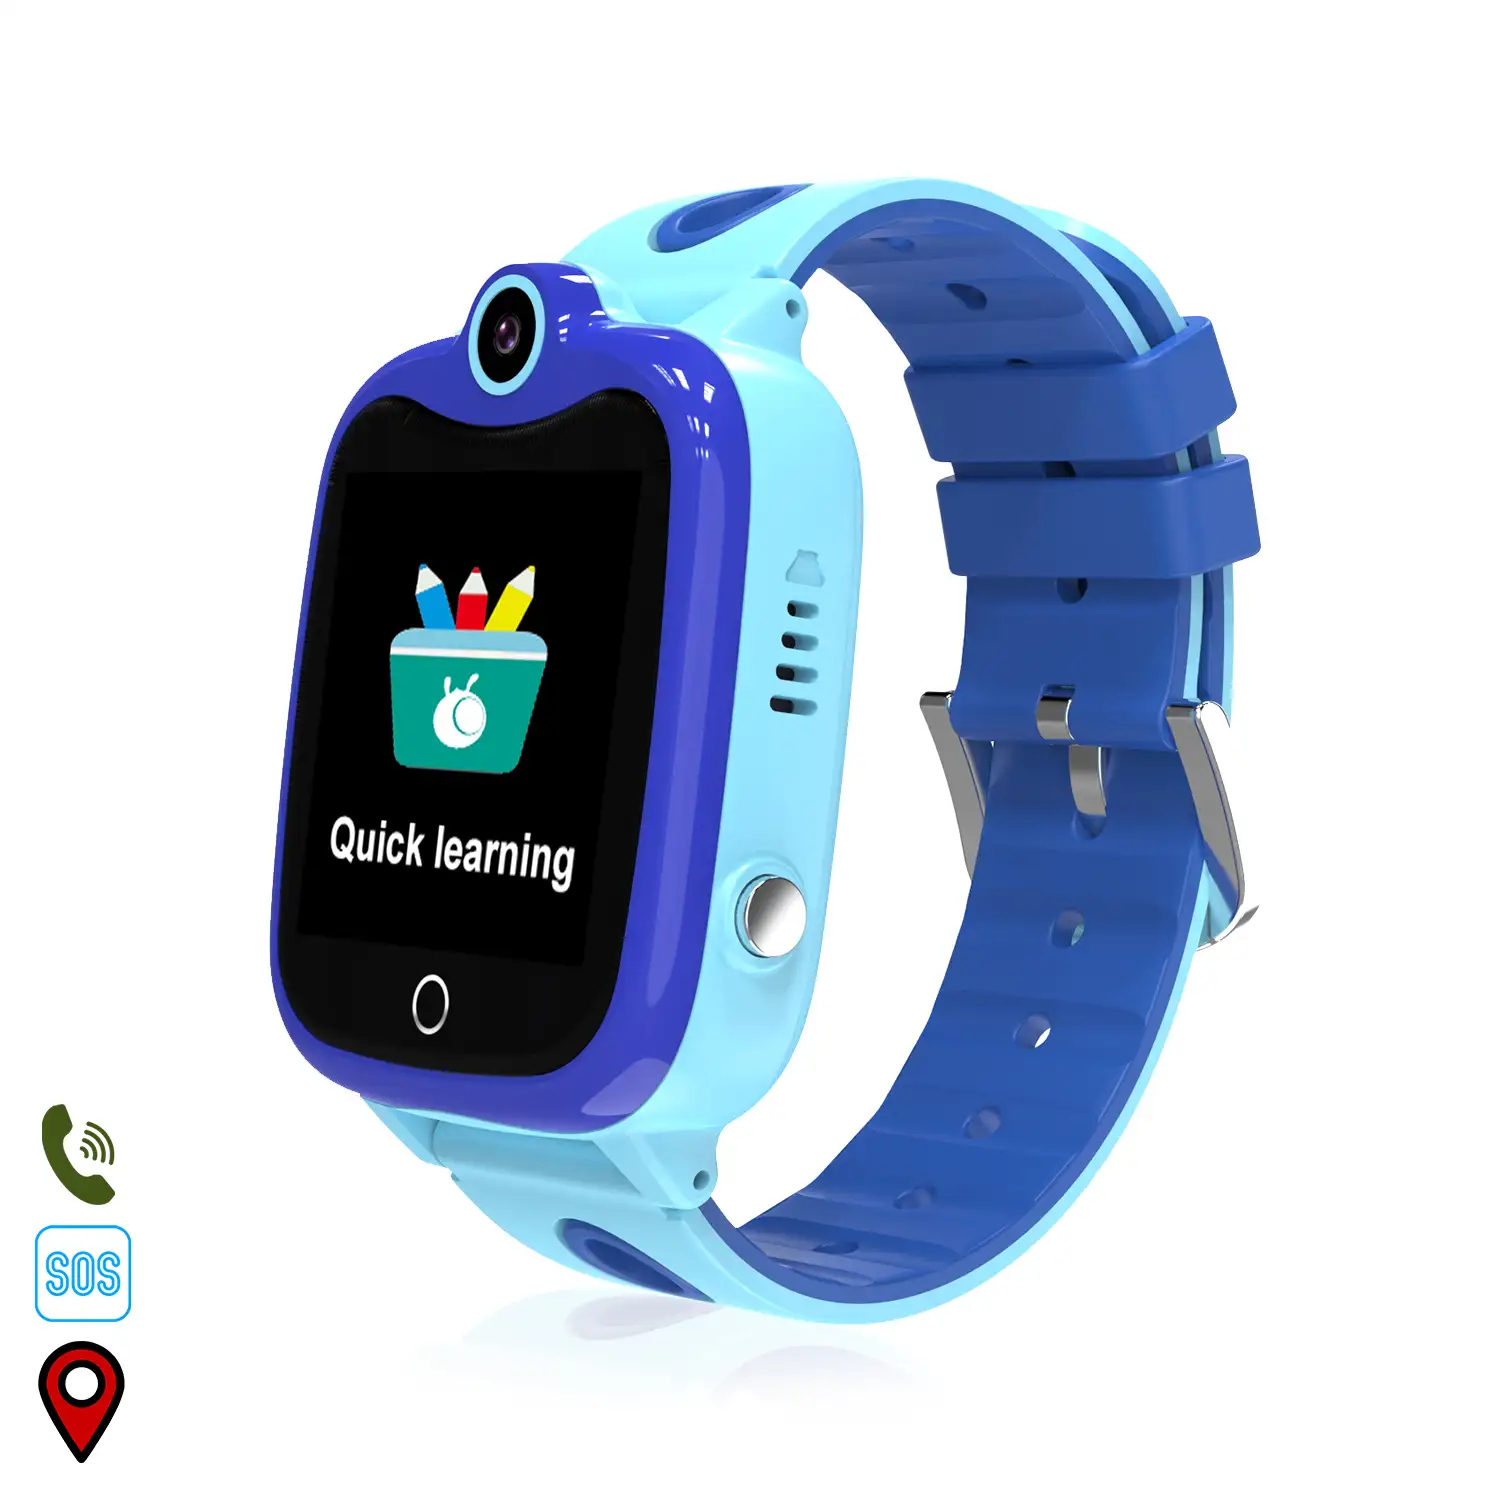 Smartwatch GPS localizador DS06 para niños. Intercomunicador, area de seguridad, comunicación de 2 vías.